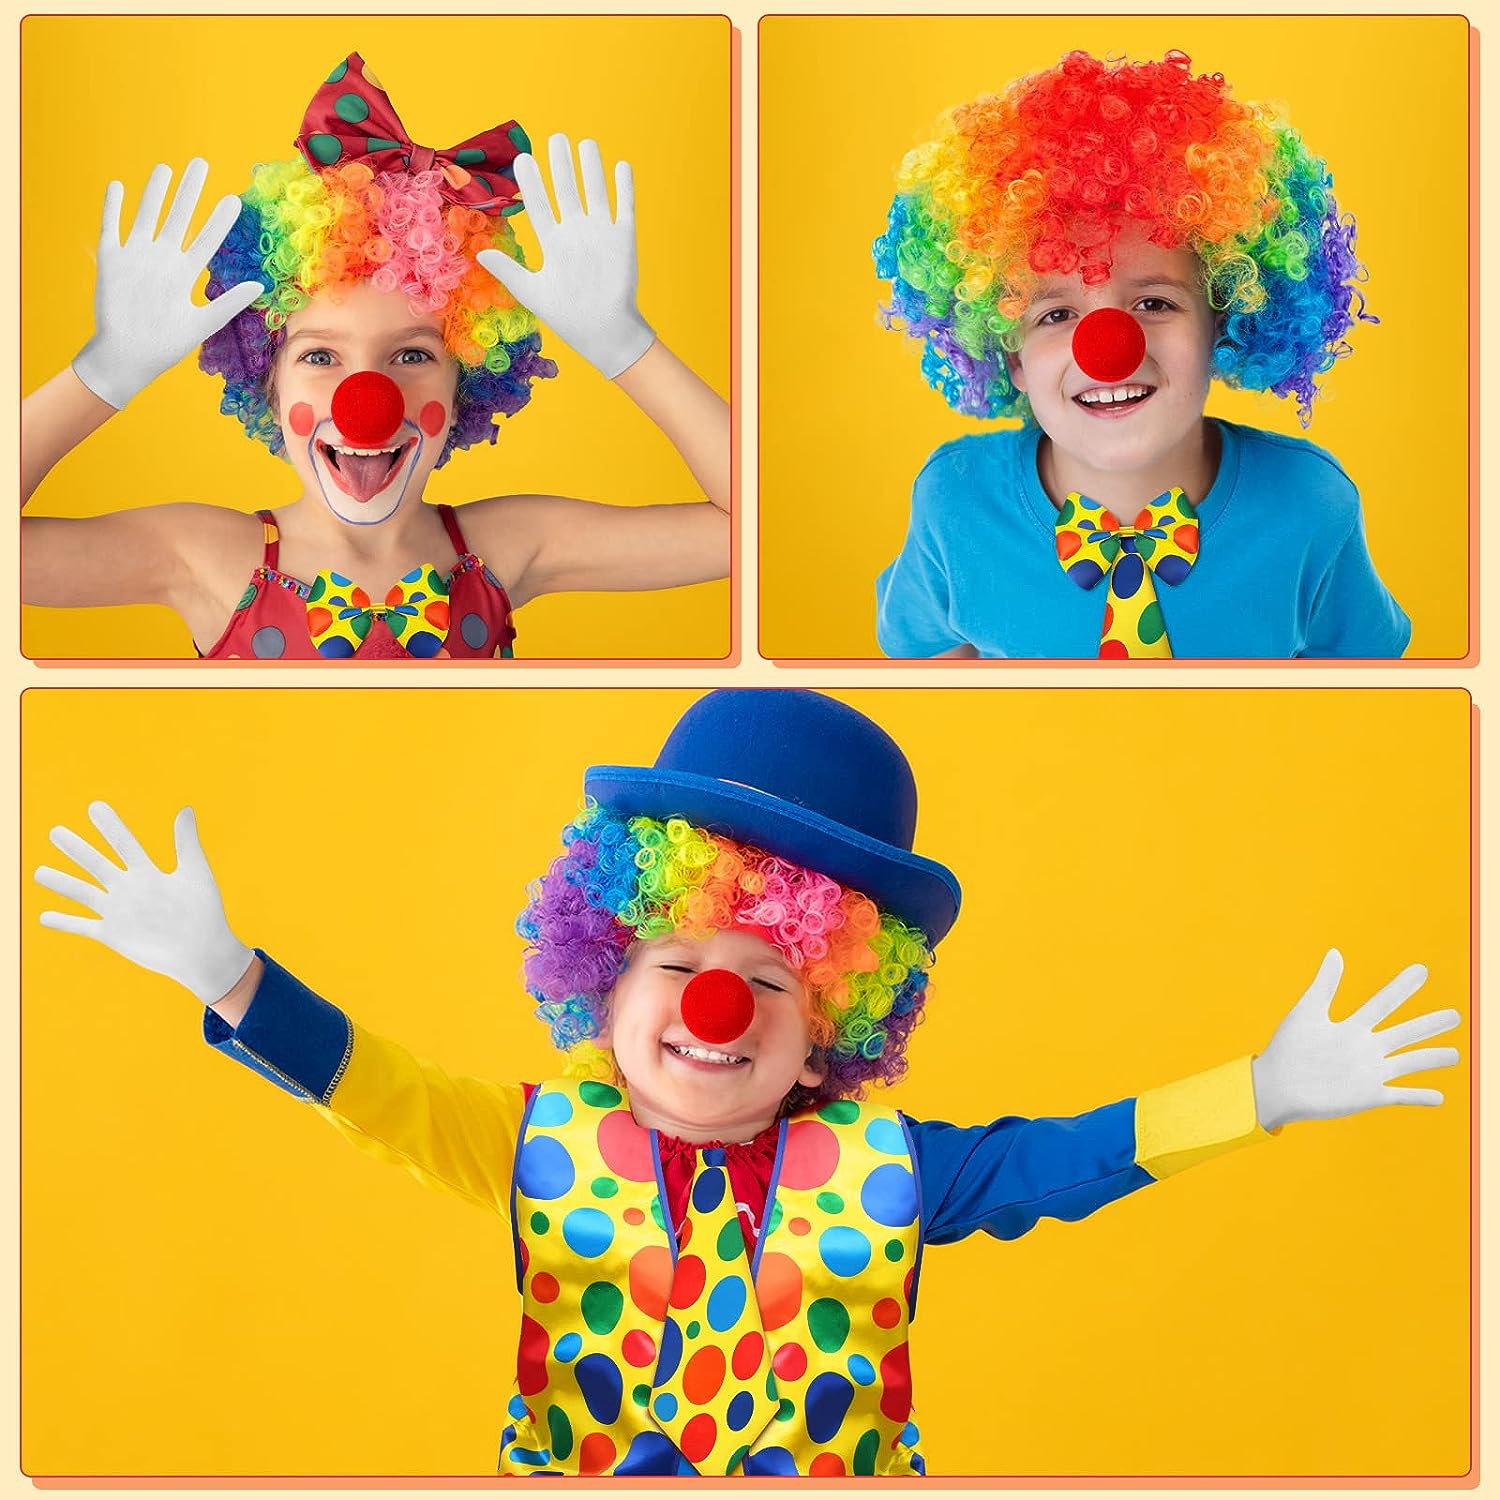 440 Best clown makeup ideas  clown makeup, clown, halloween makeup